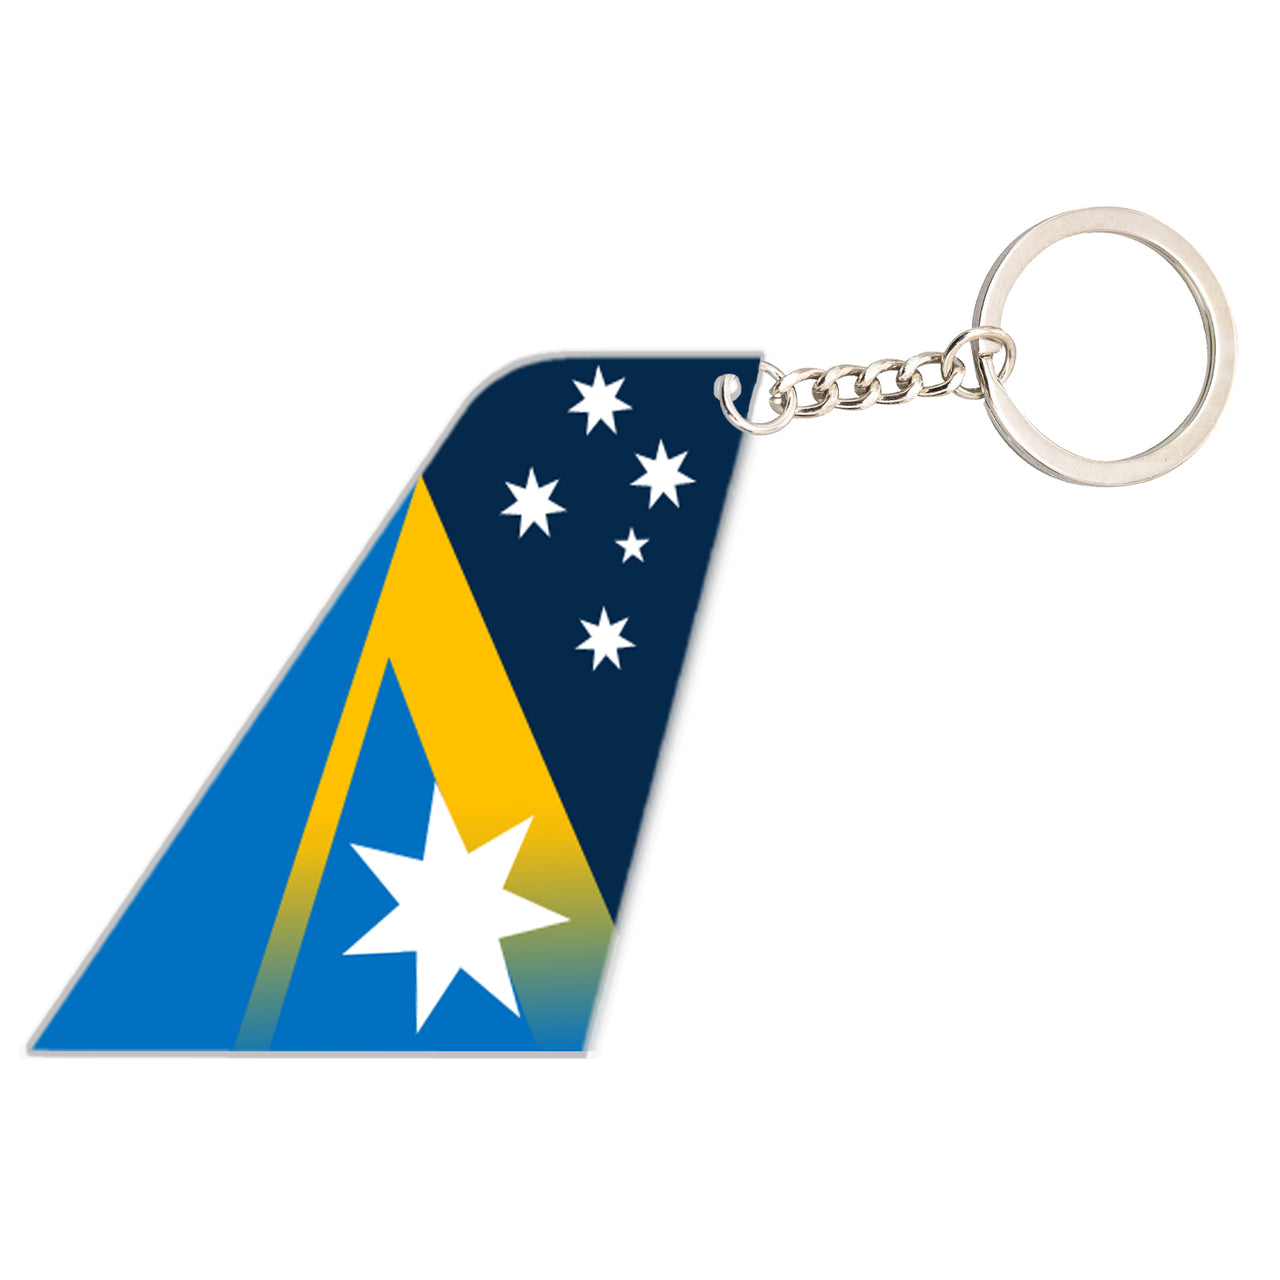 Ansett Australia Airlines Designed Tail Key Chains